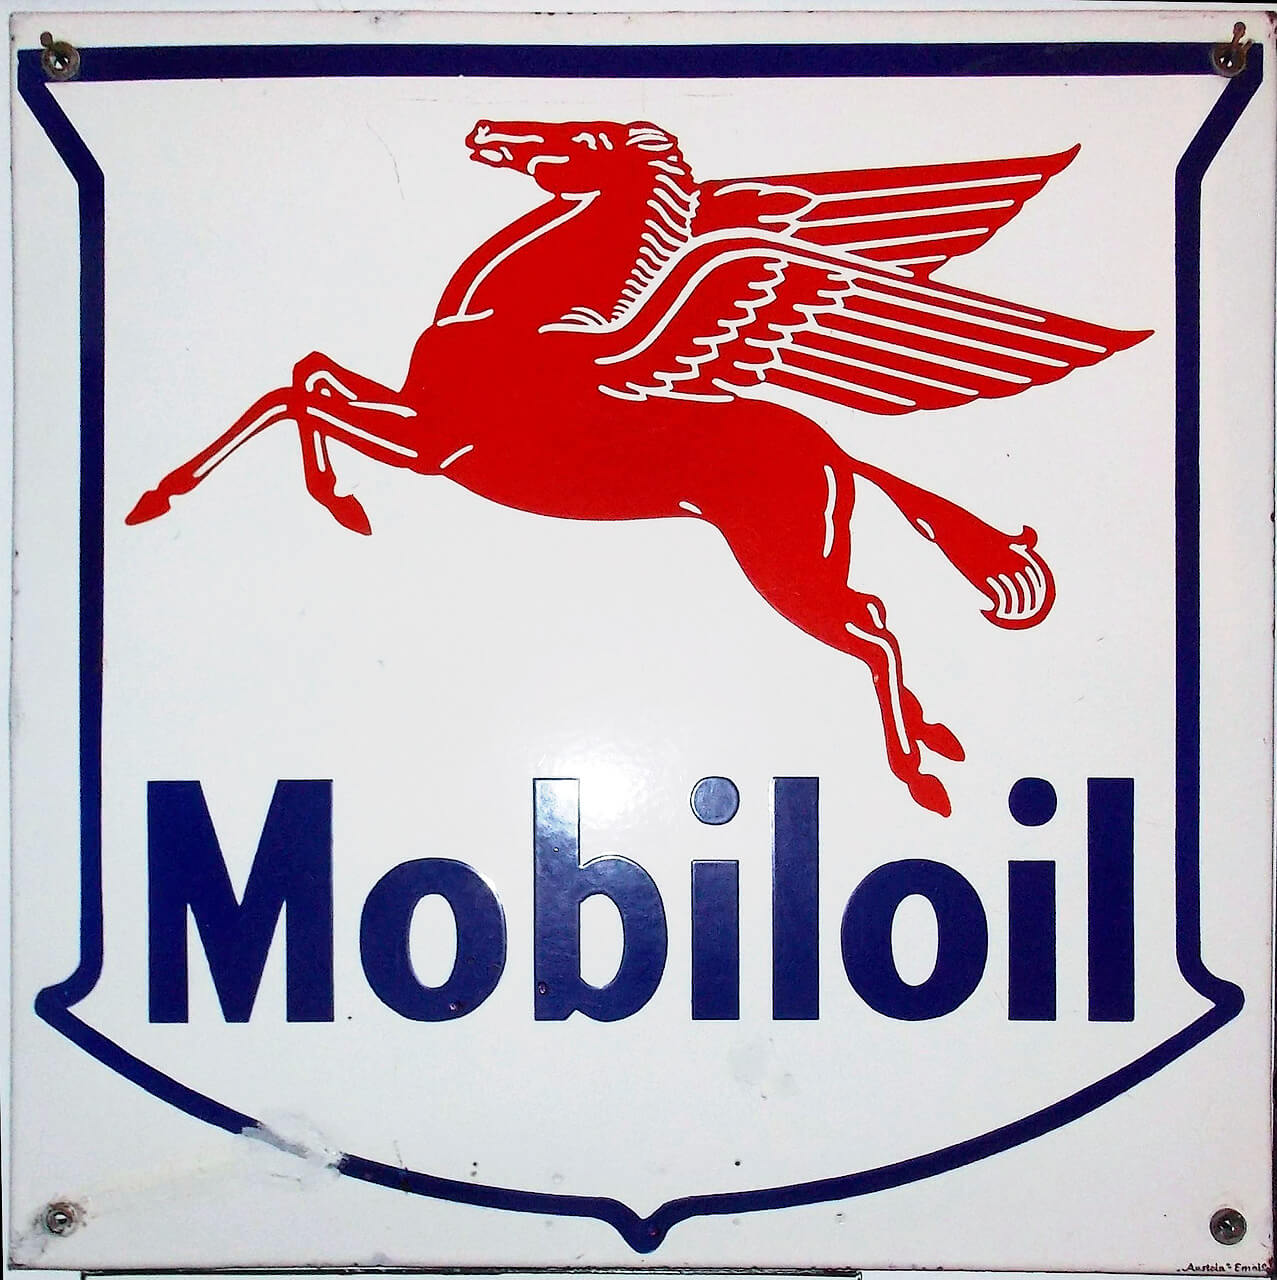 Mobiloil